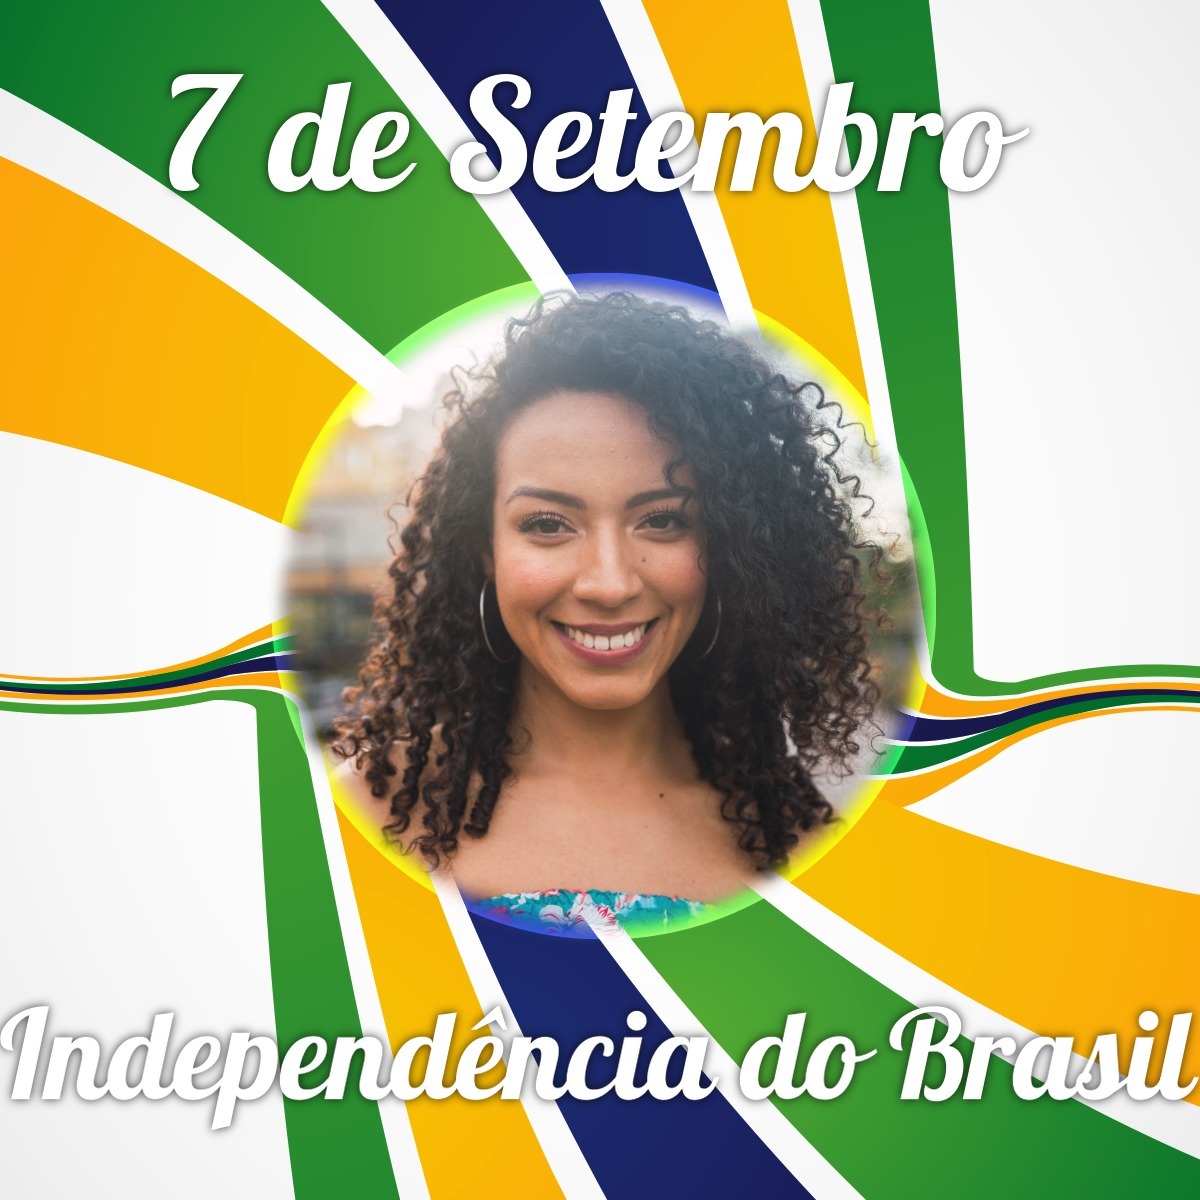 Giorno dell'indipendenza brasiliana Fotomontaggio